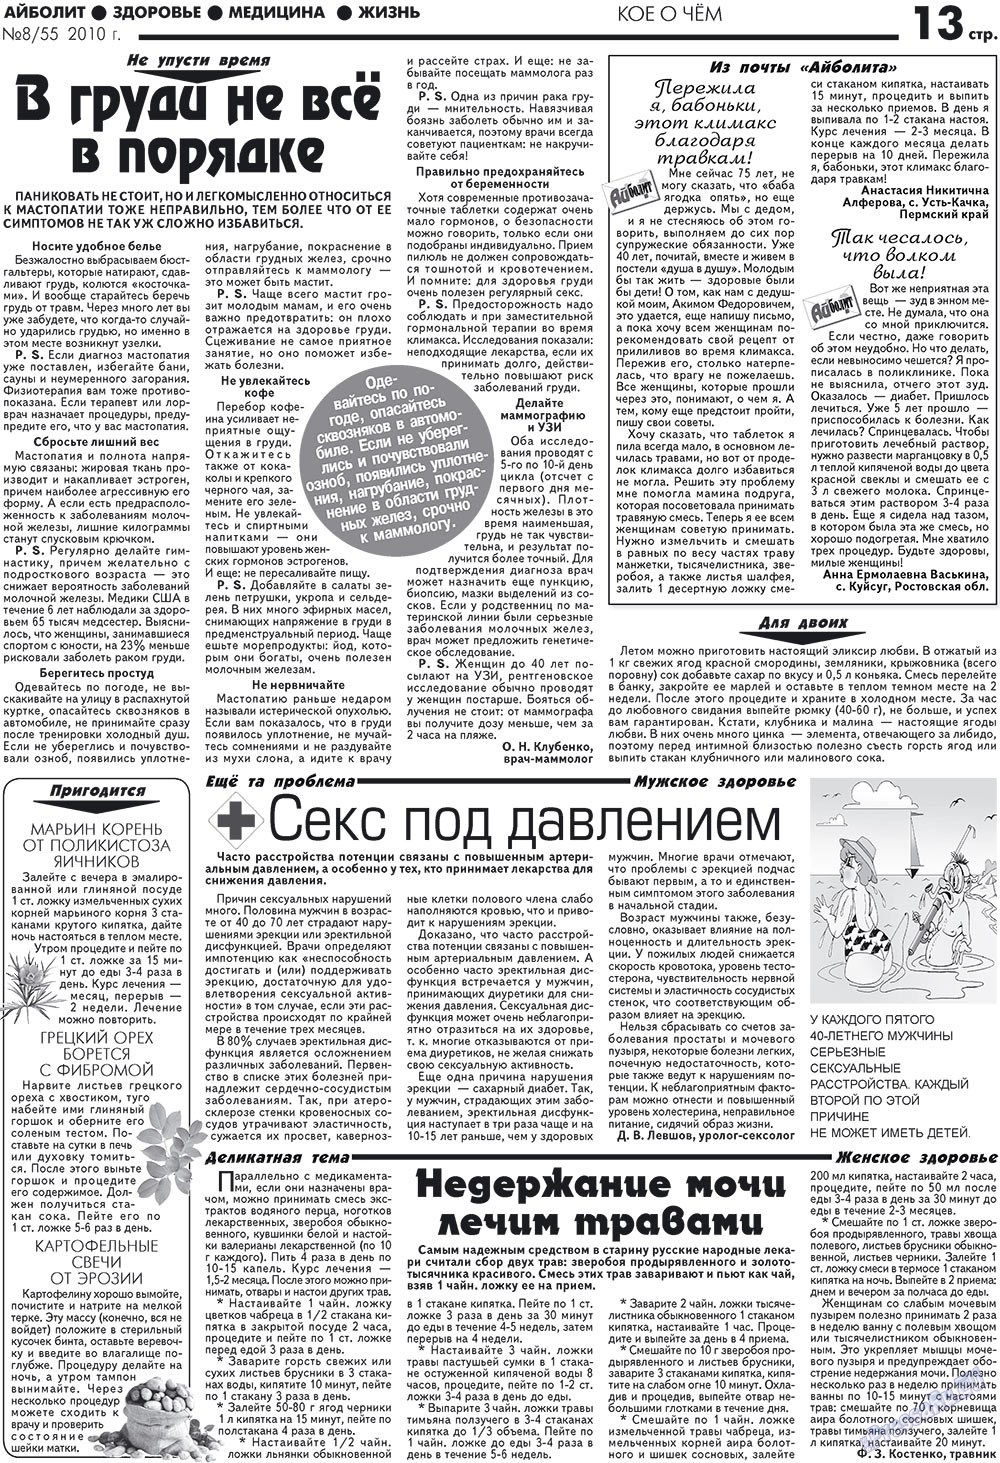 АйБолит, газета. 2010 №8 стр.13